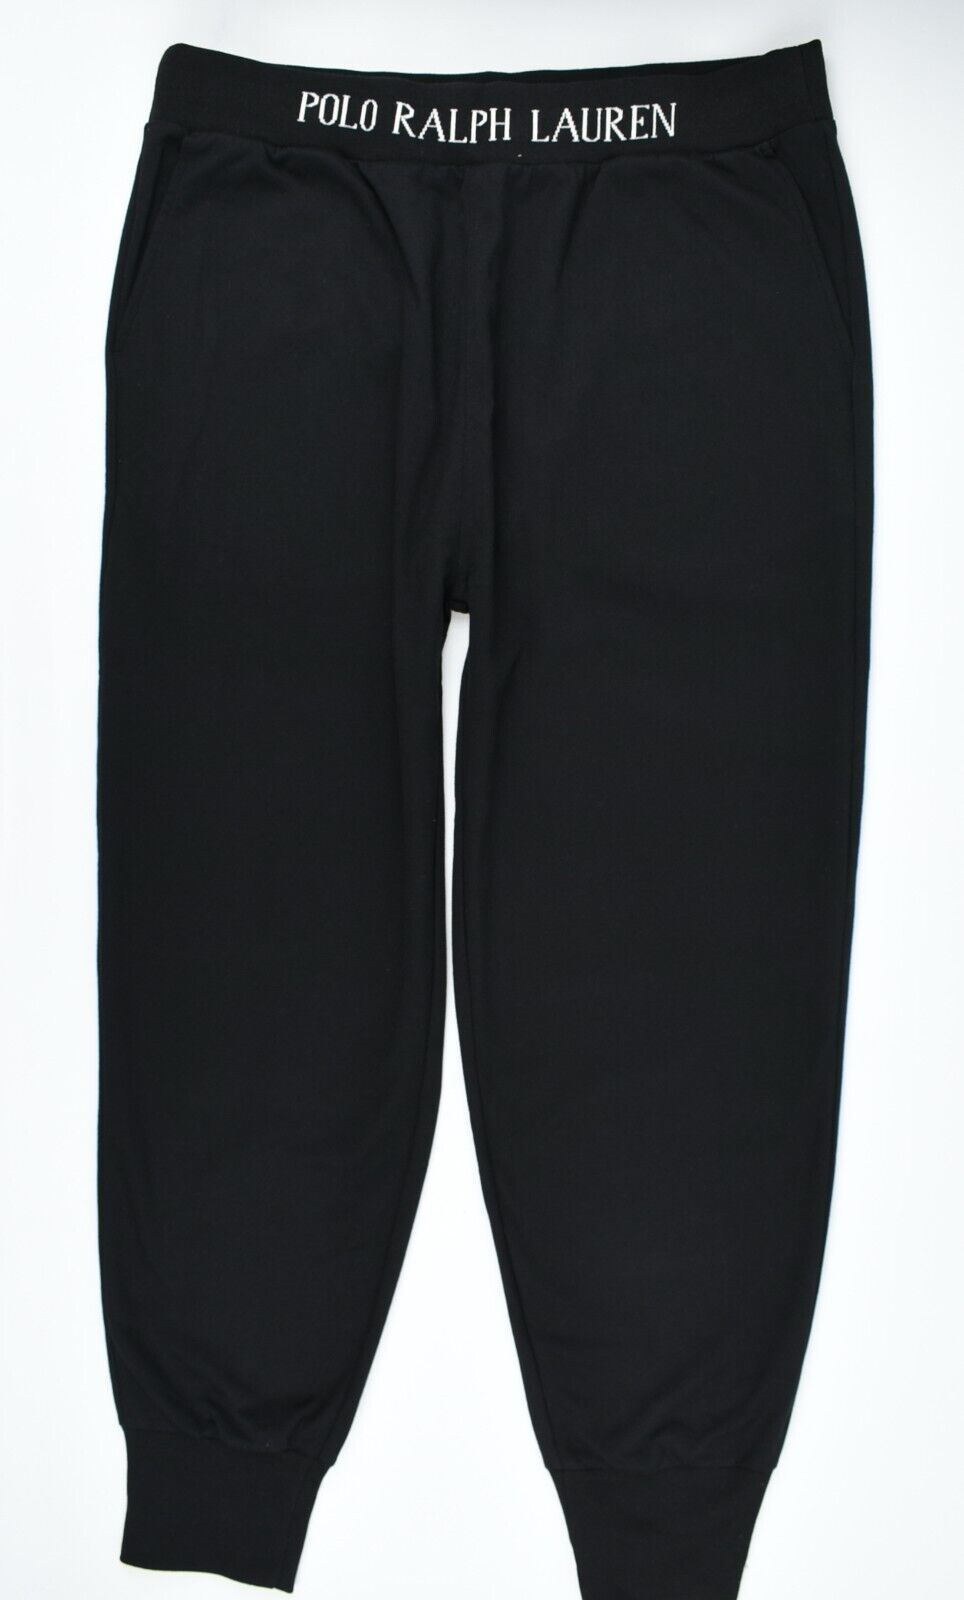 POLO RALPH LAUREN Men's Standard Fit Joggers, Black, size XL